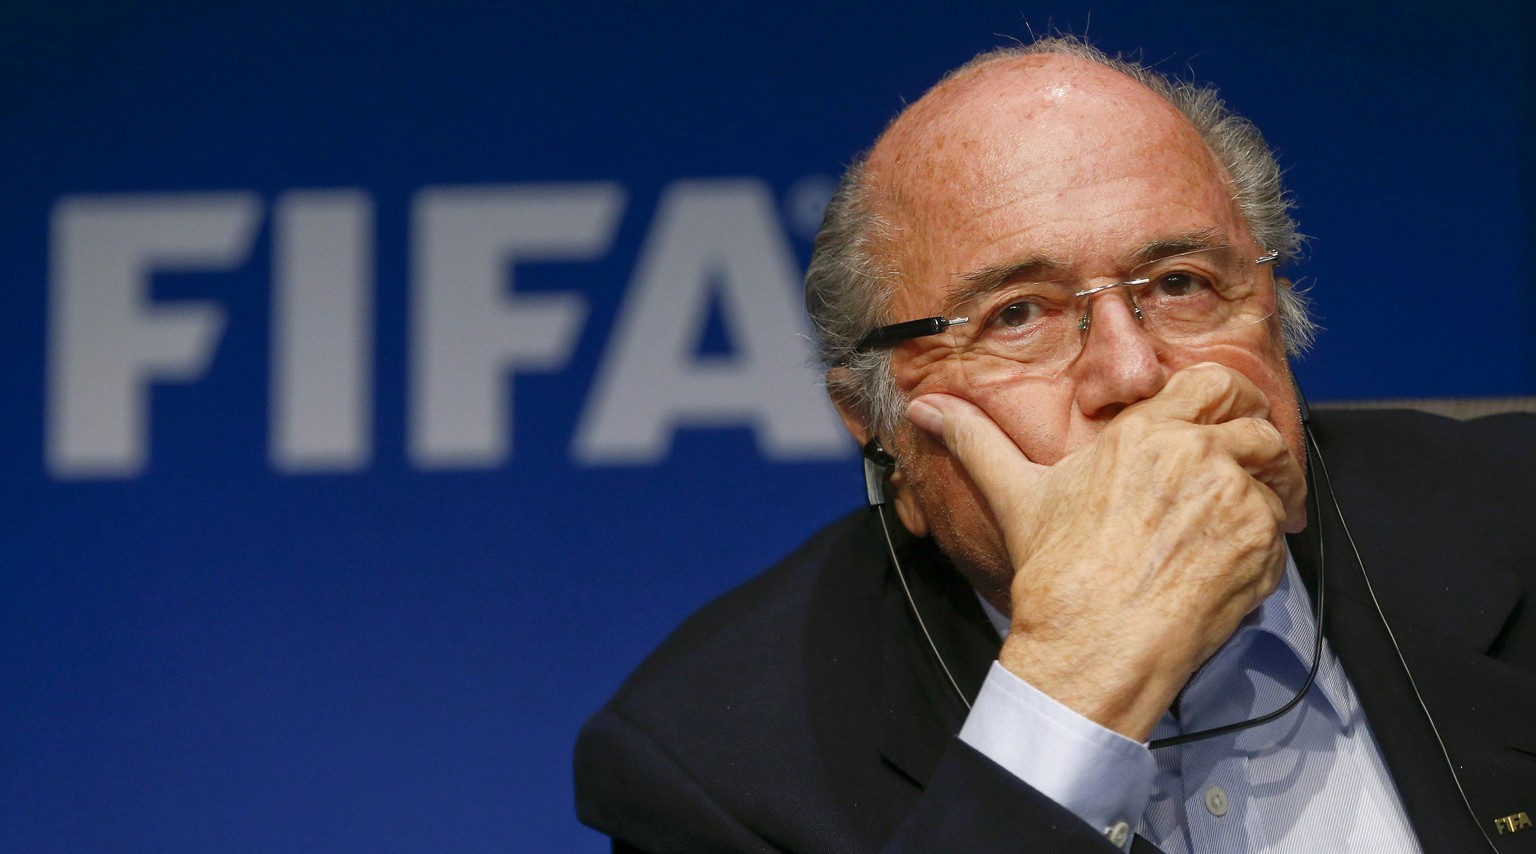 Durch die Gesetzesänderung wird FIFA-Chef Sepp Blatter als «Politically Exposed Person» (PEP) eingestuft.